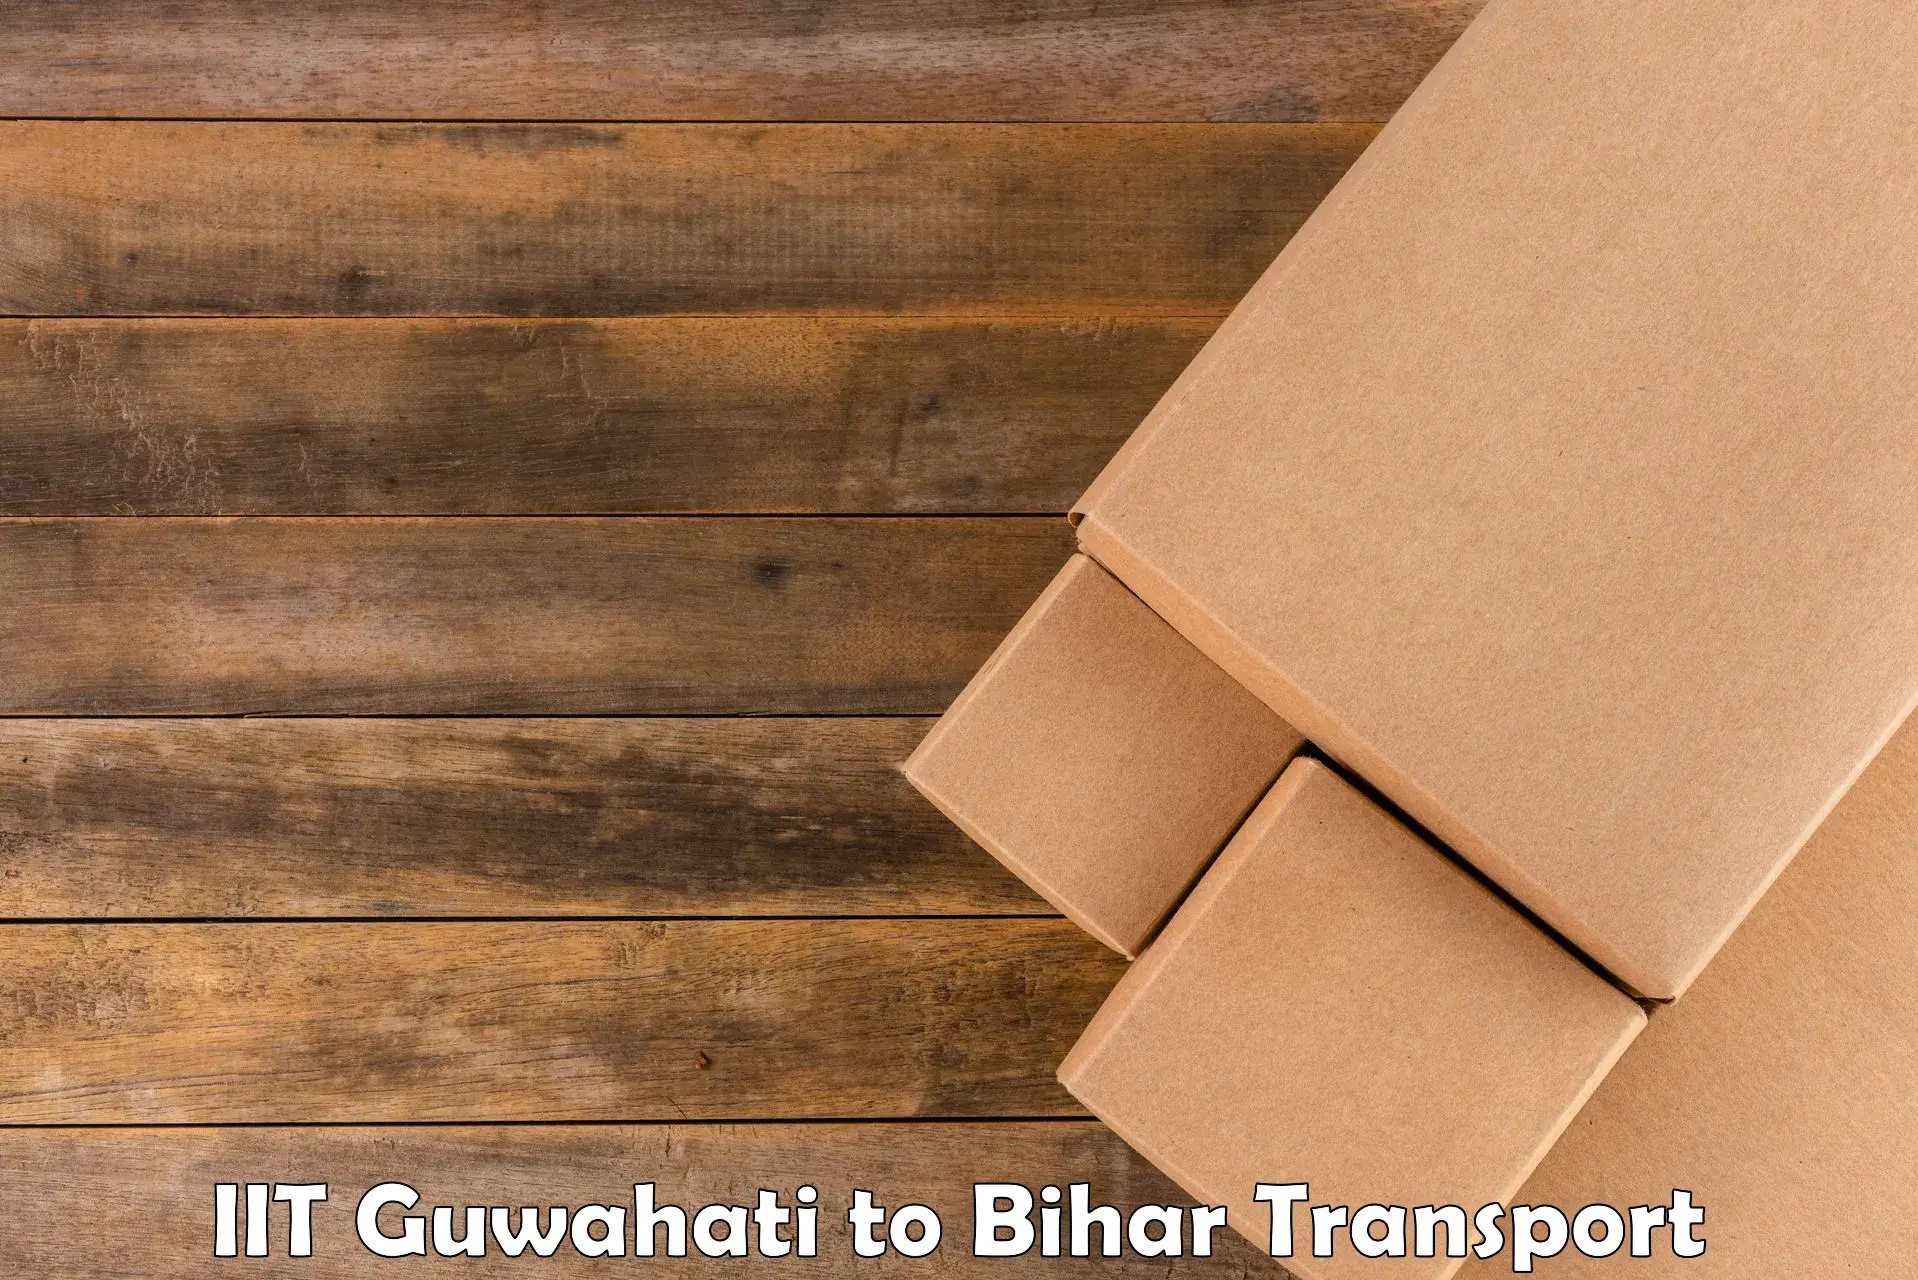 Truck transport companies in India in IIT Guwahati to Sitamarhi